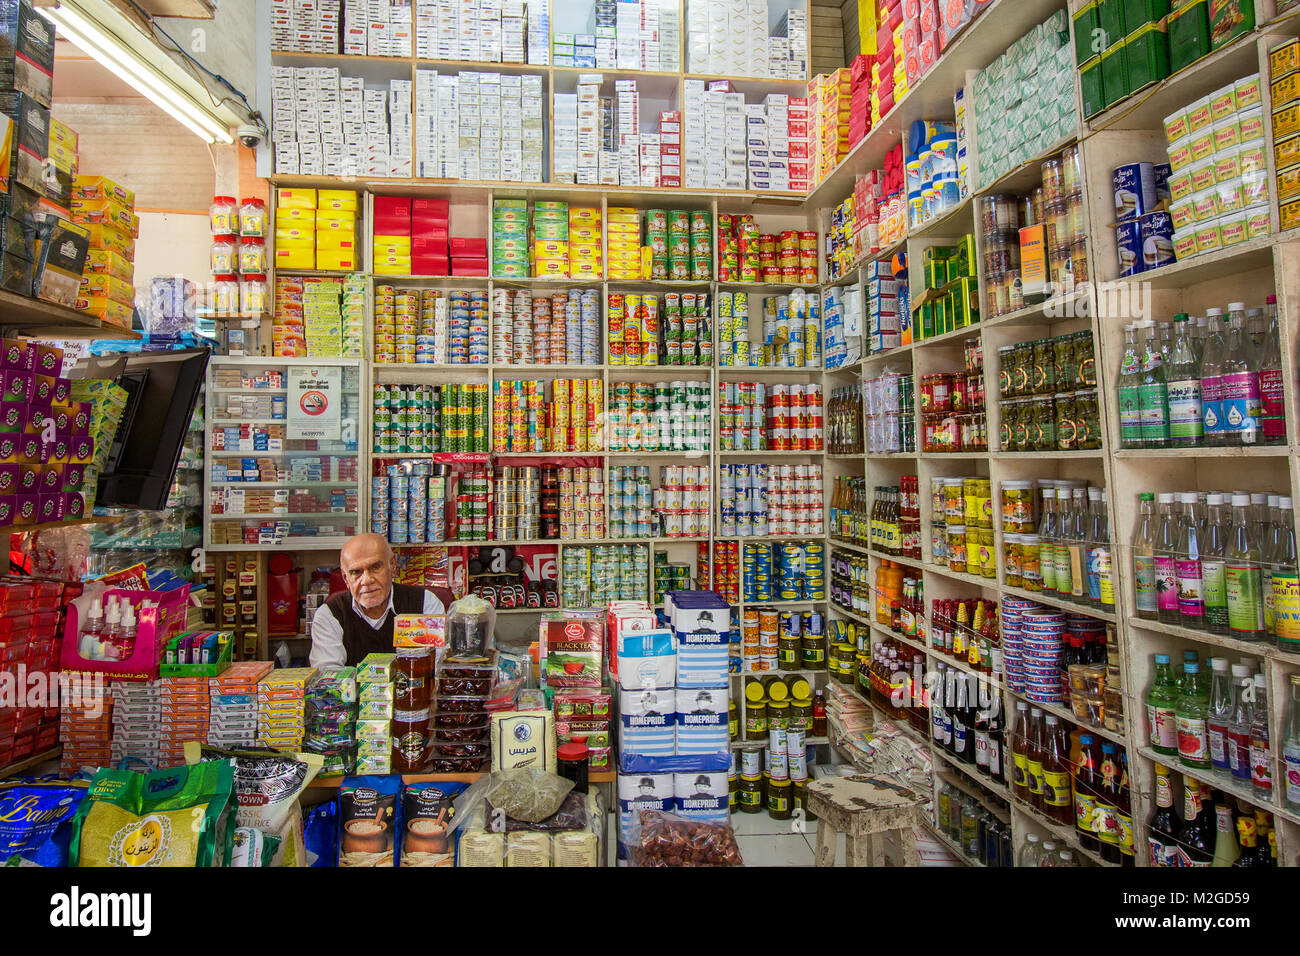 Innenansicht eines Lebensmittelgeschäft in Bahrain, Naher Osten, mit dem Store owner Stockfoto